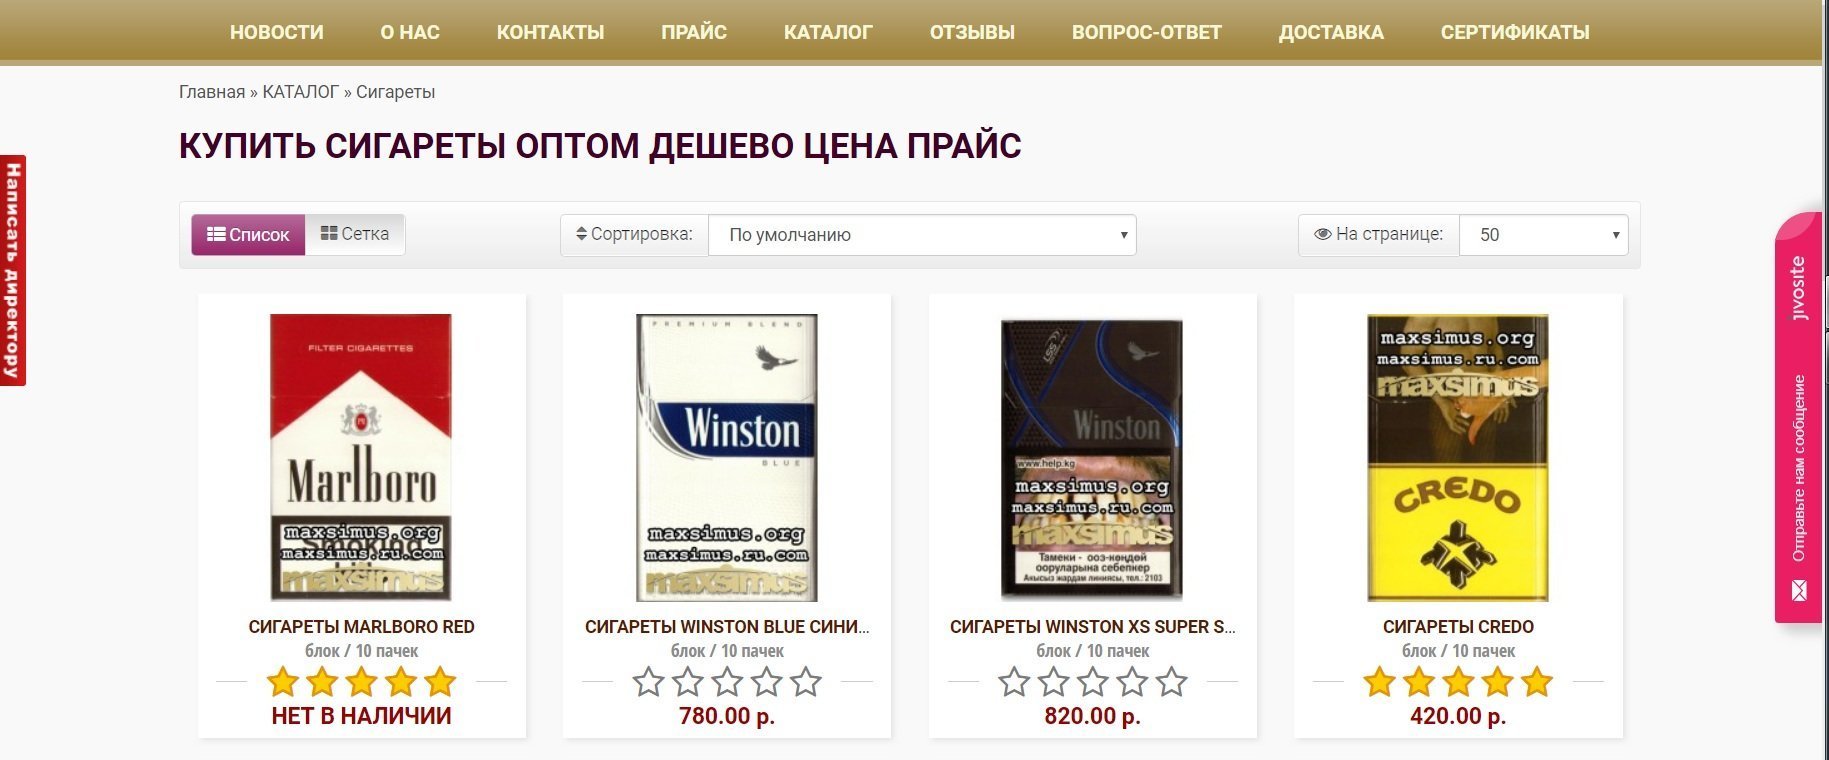 Сигареты оптом прайс. Сигареты кредо. Белорусские сигареты кредо. Credo MS сигареты. Кредо сигареты крепость.